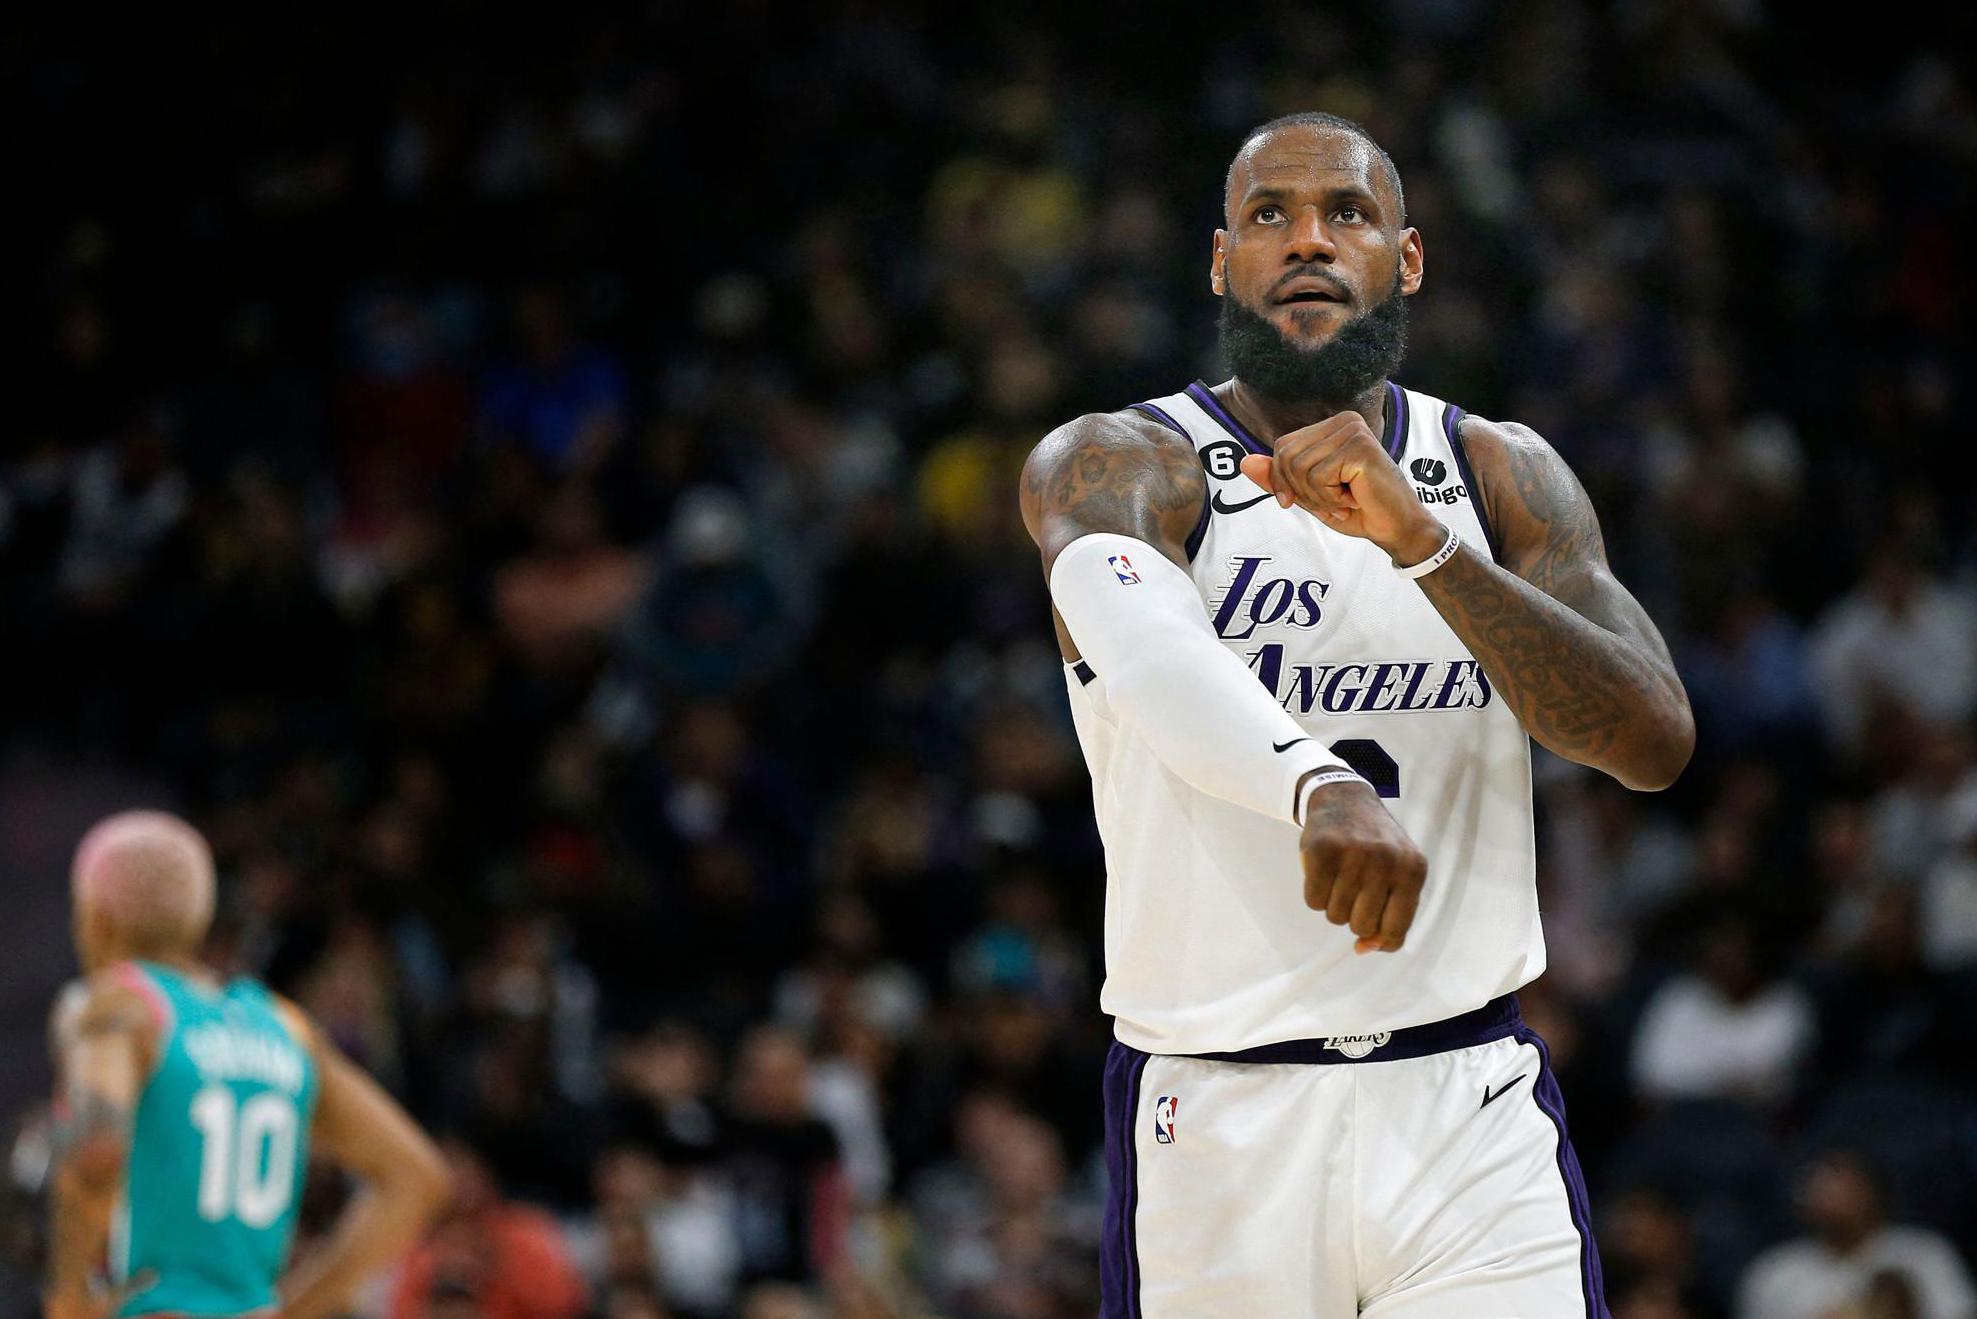 NBA. Lakers winnen van Spurs dankzij terugkeer LeBron James, Celtics blijven op kruissnelheid